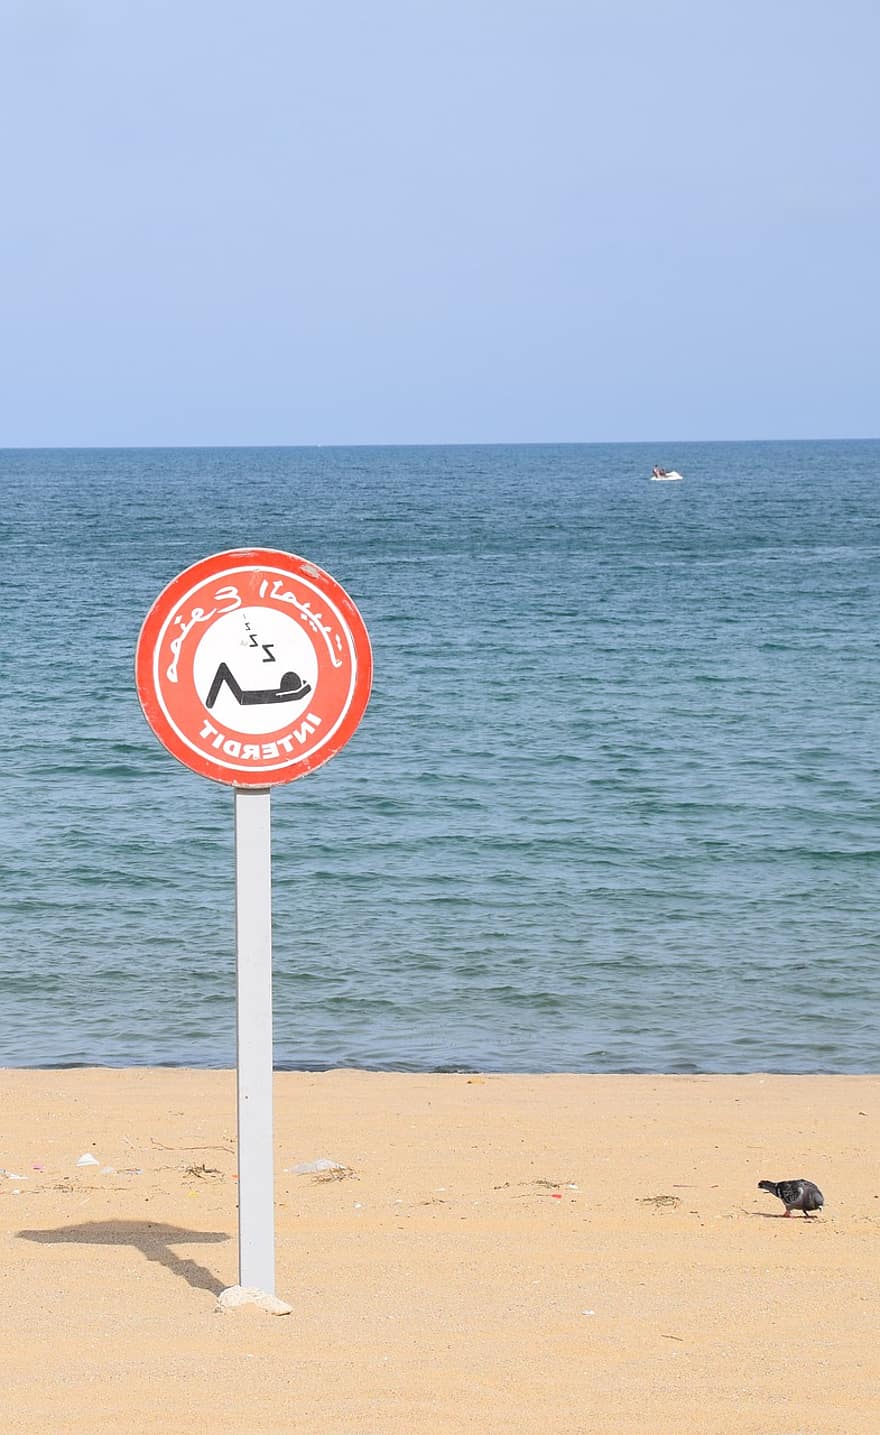 zīme, brīdinājums, pludmale, smiltis, okeāns, viļņi, jūra, brīvdienas